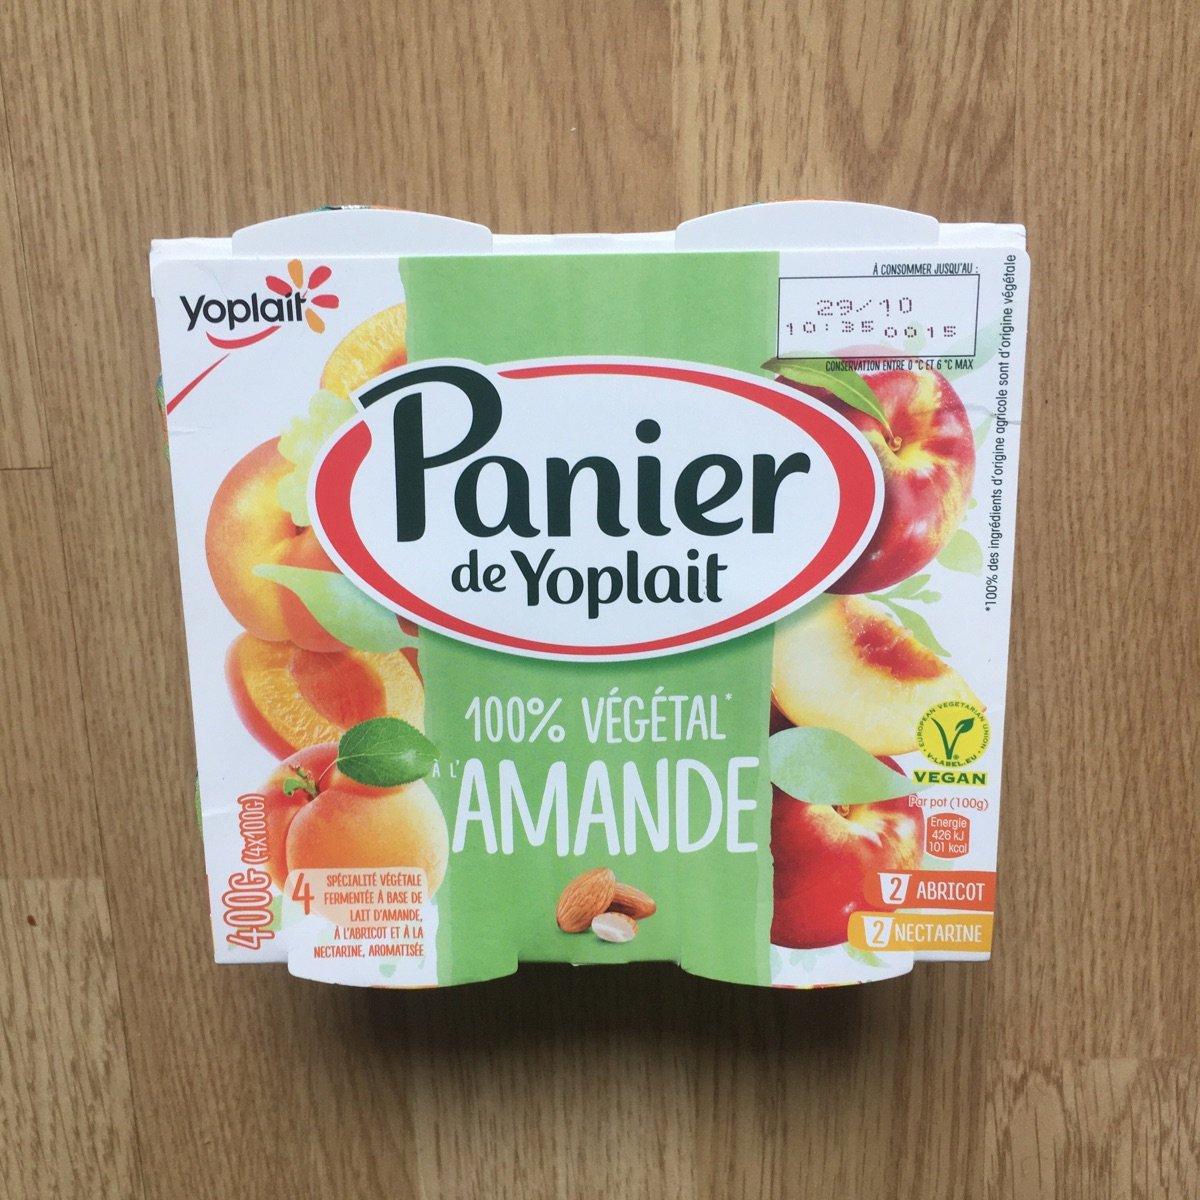 Yoplait Panier de Yoplait Végétal - Abricot Reviews | abillion